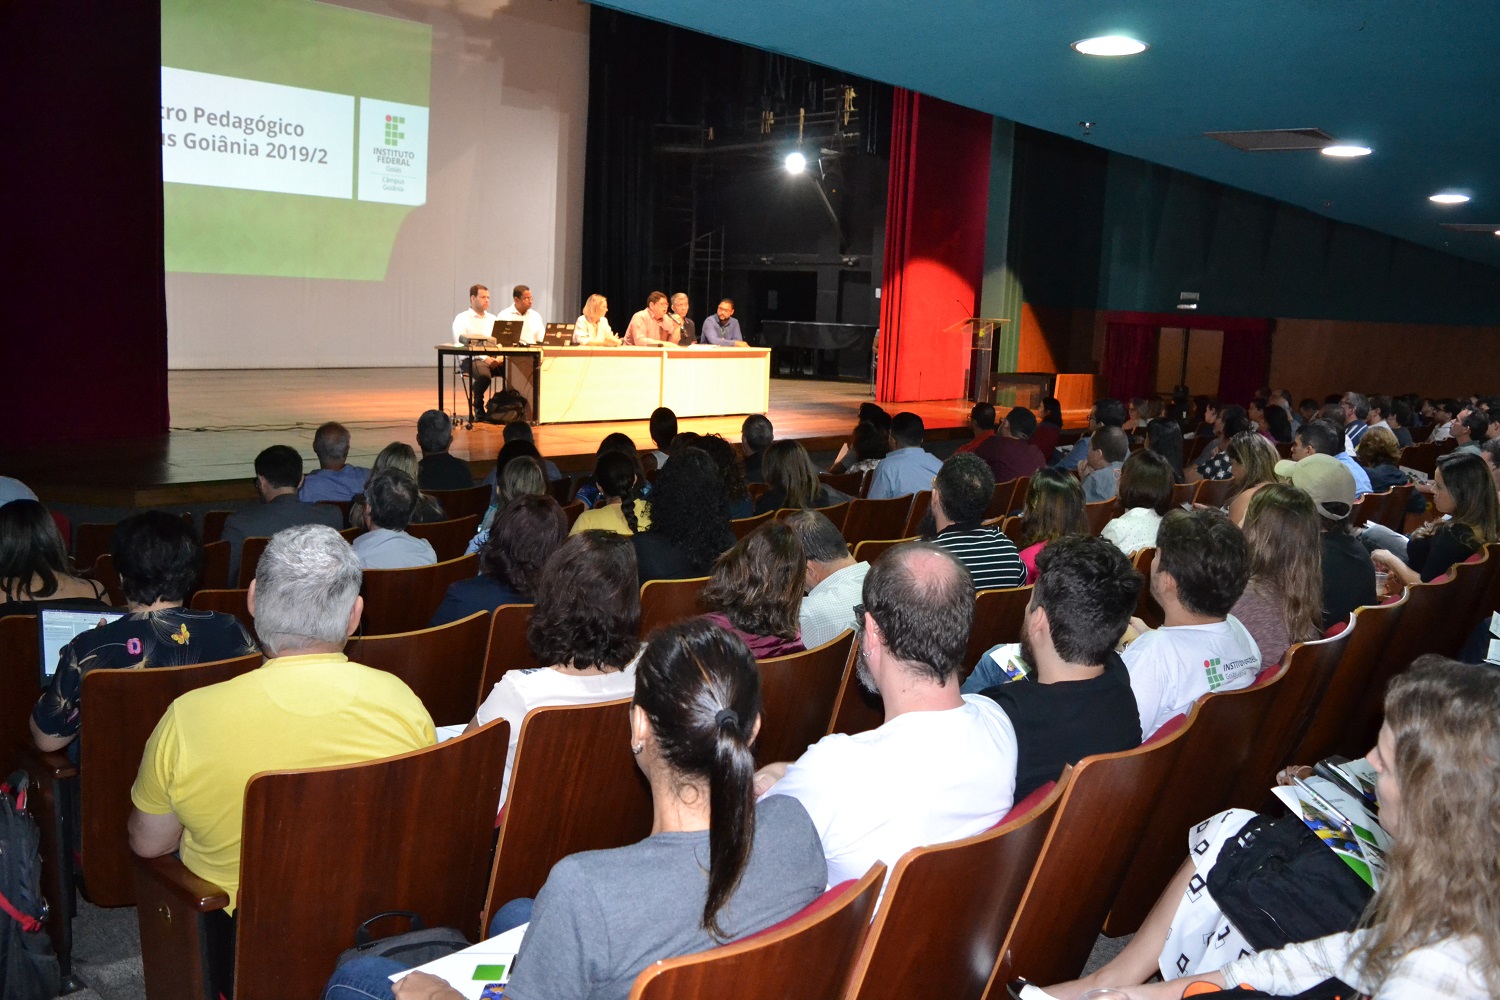 A abertura do Encontro Pedagógico 2019/2 reuniu servidores do Câmpus Goiânia na manhã desta terça-feira, 31, no Teatro.